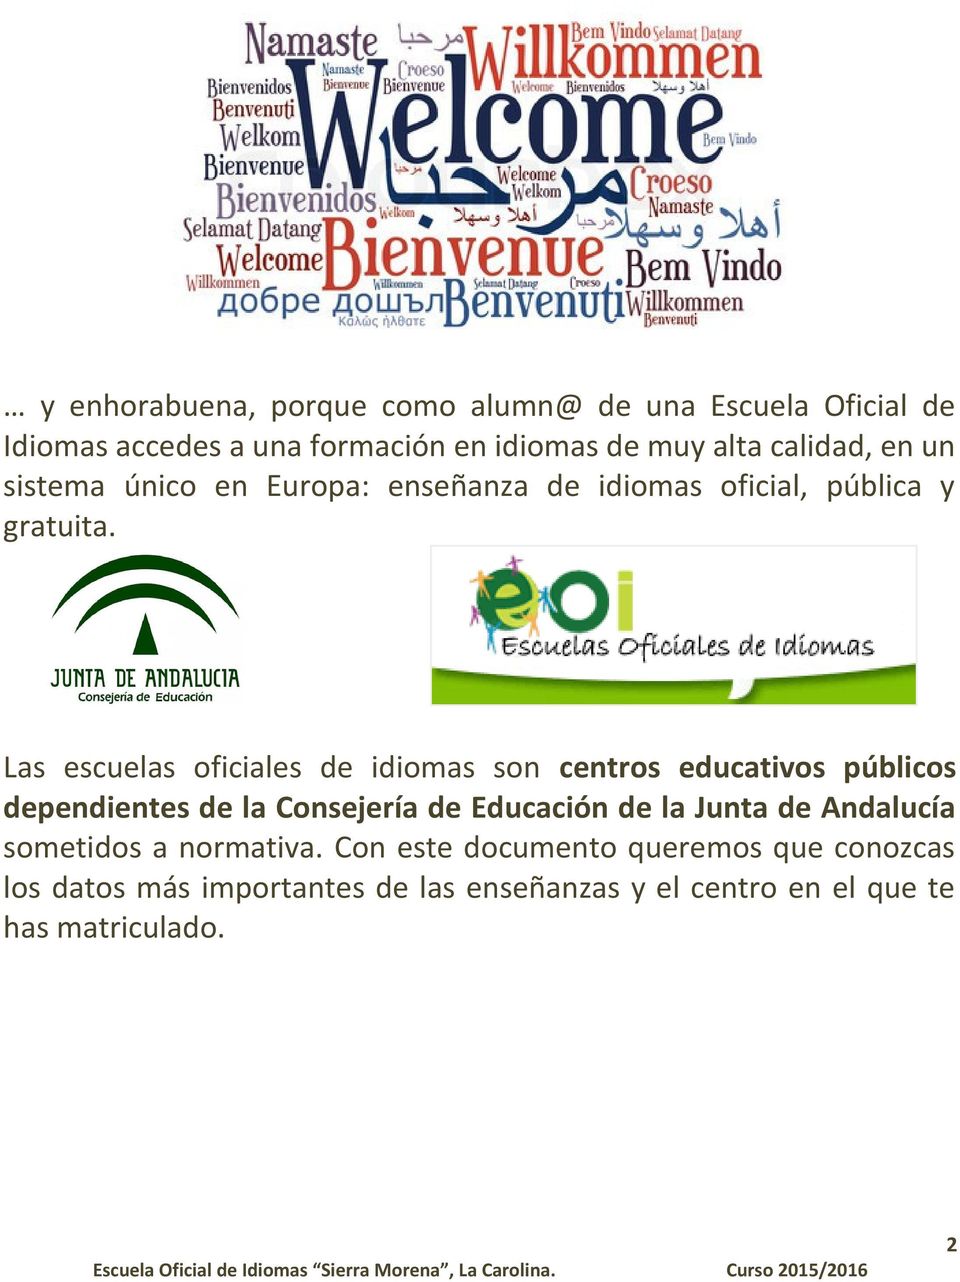 Las escuelas oficiales de idiomas son centros educativos públicos dependientes de la Consejería de Educación de la Junta de Andalucía